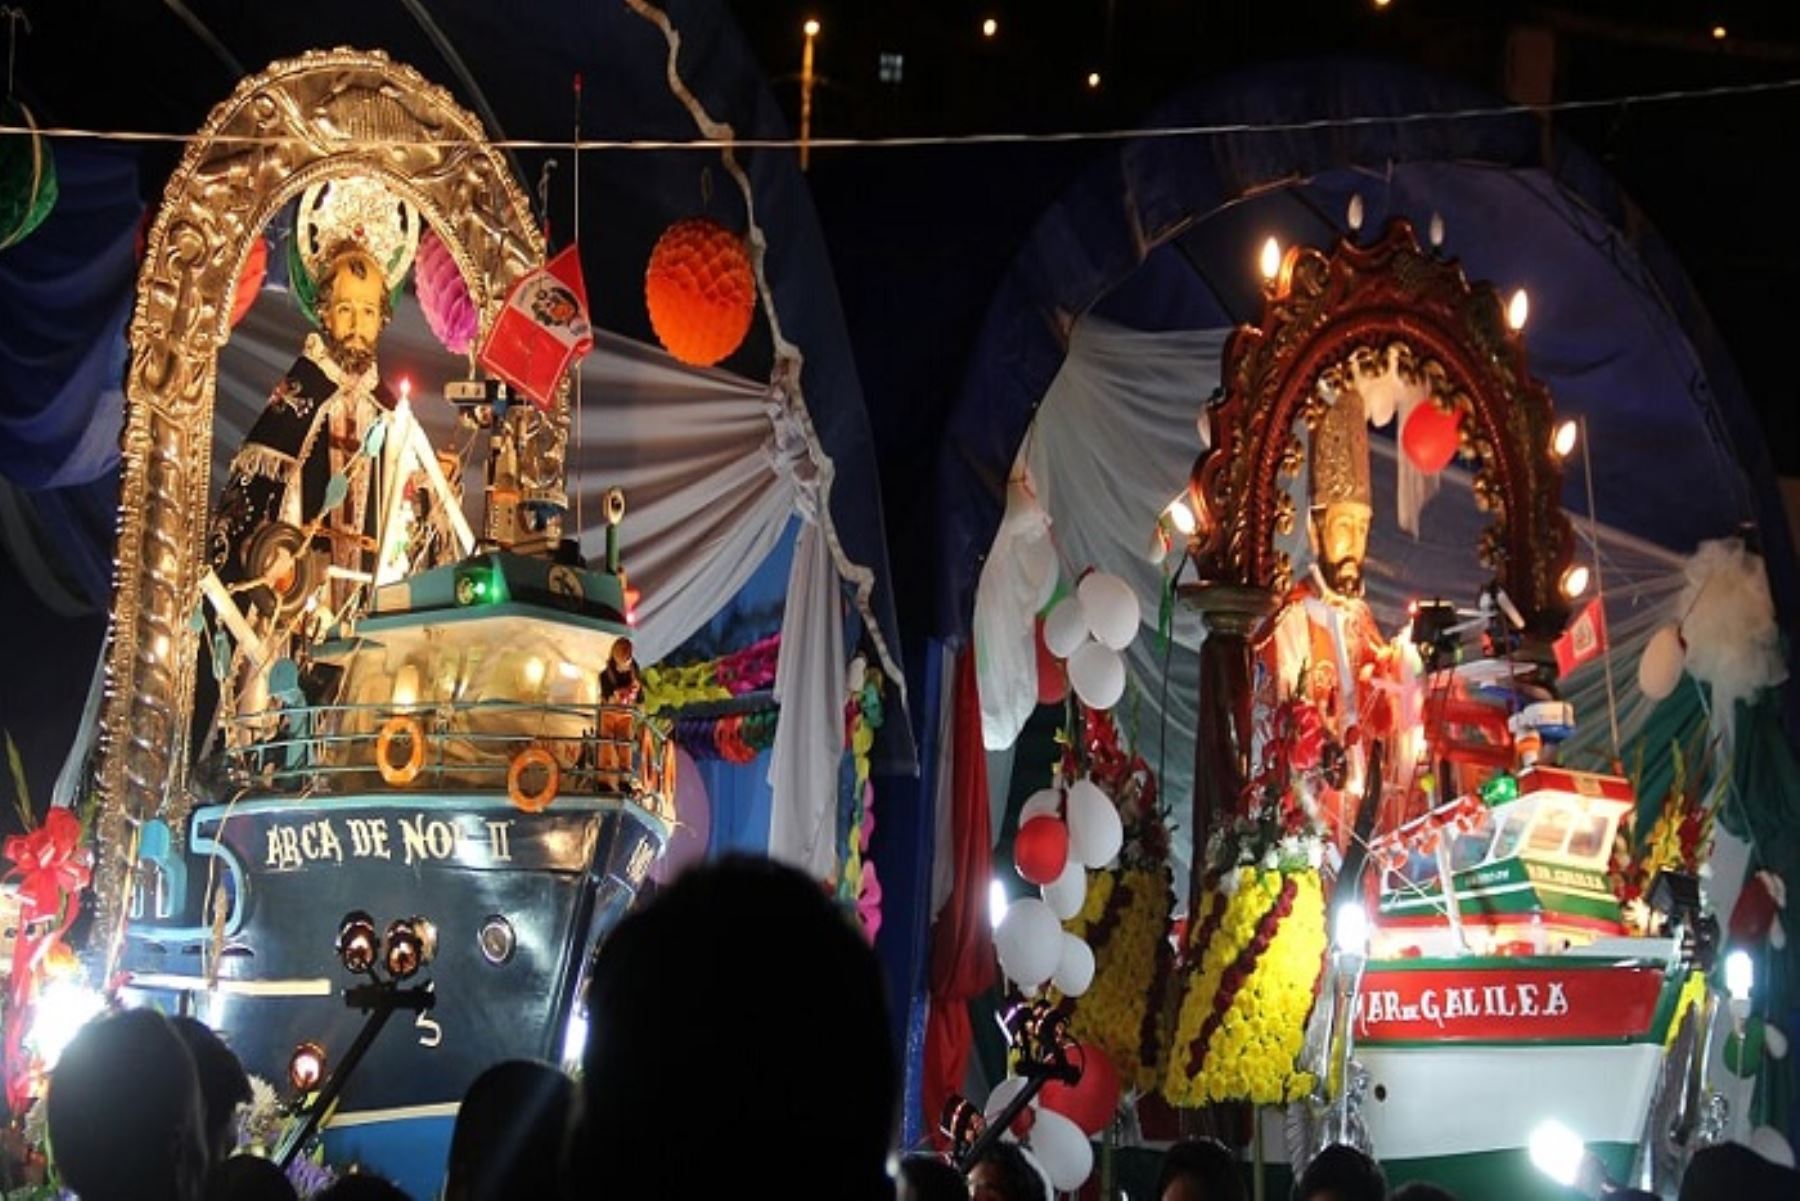 Los distritos turísticos de Huacho, Caleta de Carquín y Végueta de la provincia de Huaura, región Lima, se alistan para conmemorar del 27 al 29 de junio la festividad de San Pedro, patrón de los pescadores y santo patrón de la ciudad de Huacho.